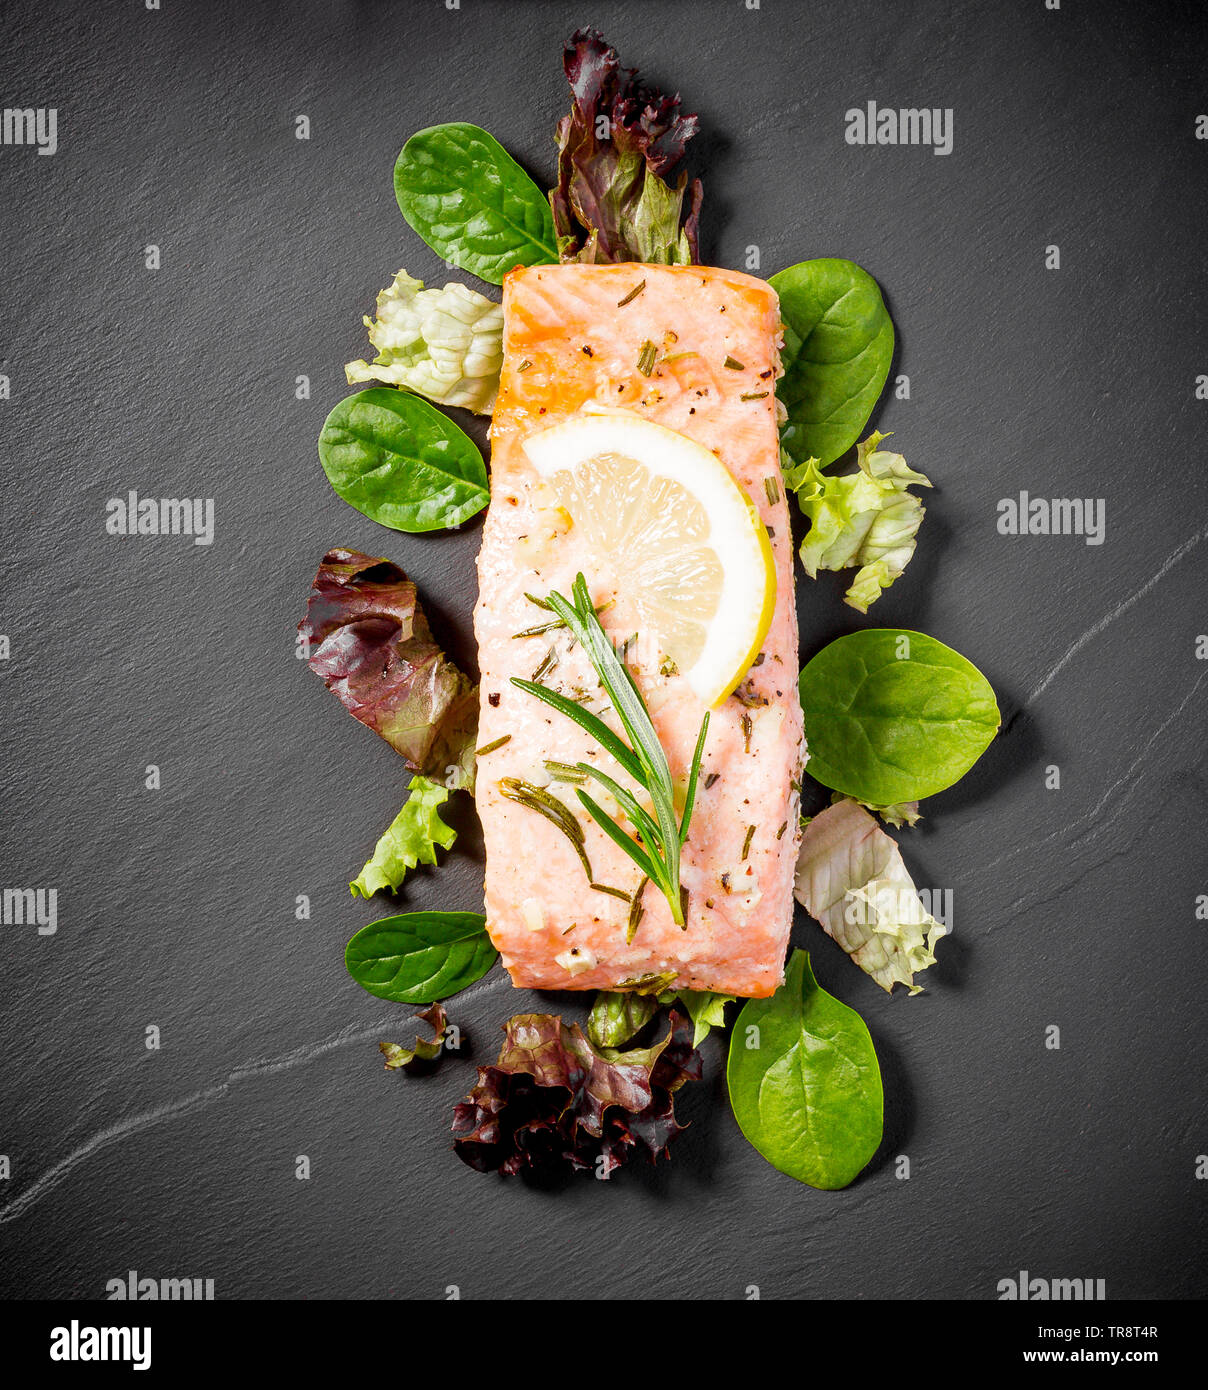 Filetto di salmone alla griglia con insalata su nero ardesia piastra, vista dall'alto Foto Stock